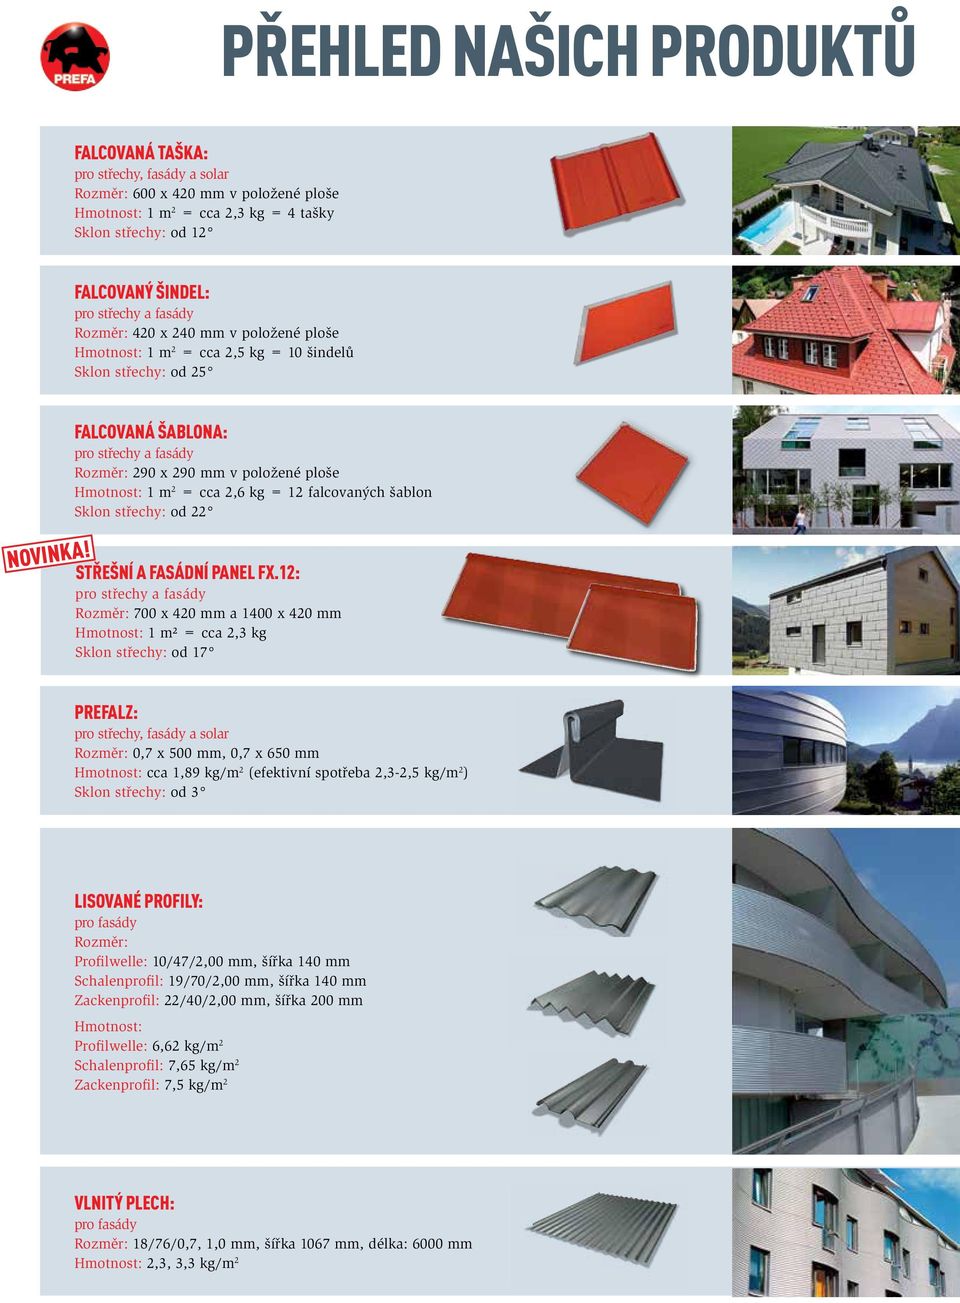 Falcovaná šablona: pro střechy a fasády Rozměr: 290 x 290 mm v položené ploše Hmotnost: 1 m 2 = cca 2,6 kg = 12 falcovaných šablon Sklon střechy: od 22 STŘEŠNÍ A FASÁDNÍ PANEL FX.